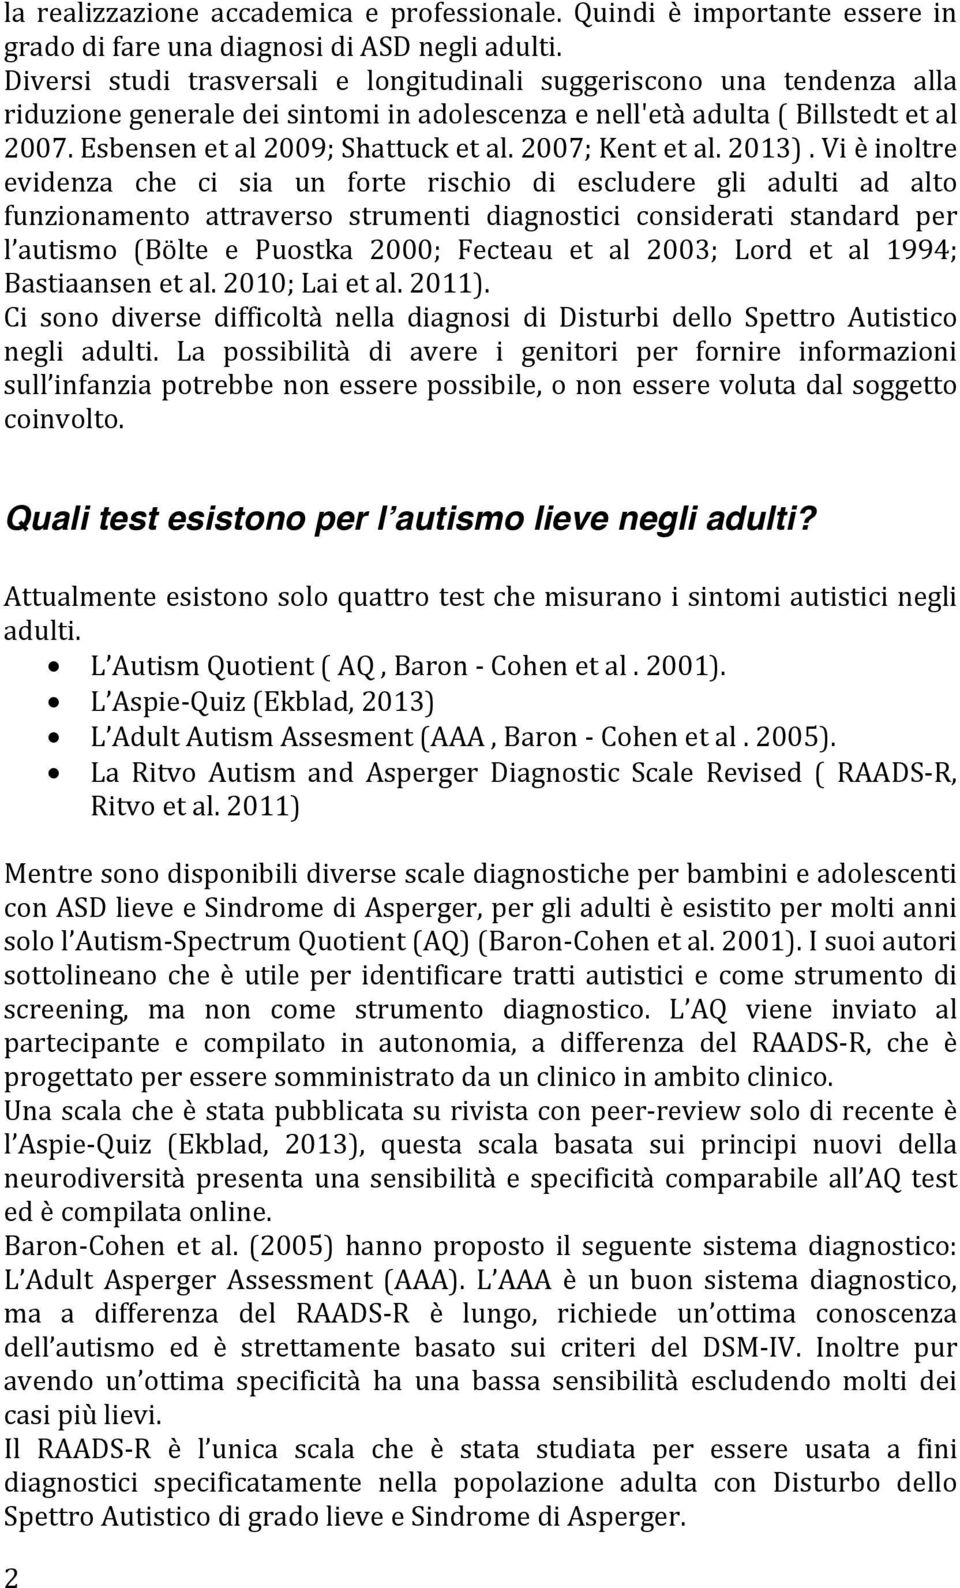 La Diagnosi Di Spettro Autistico Lieve E Sindrome Di Asperger Negli Adulti Il Raads R Pdf Free Download